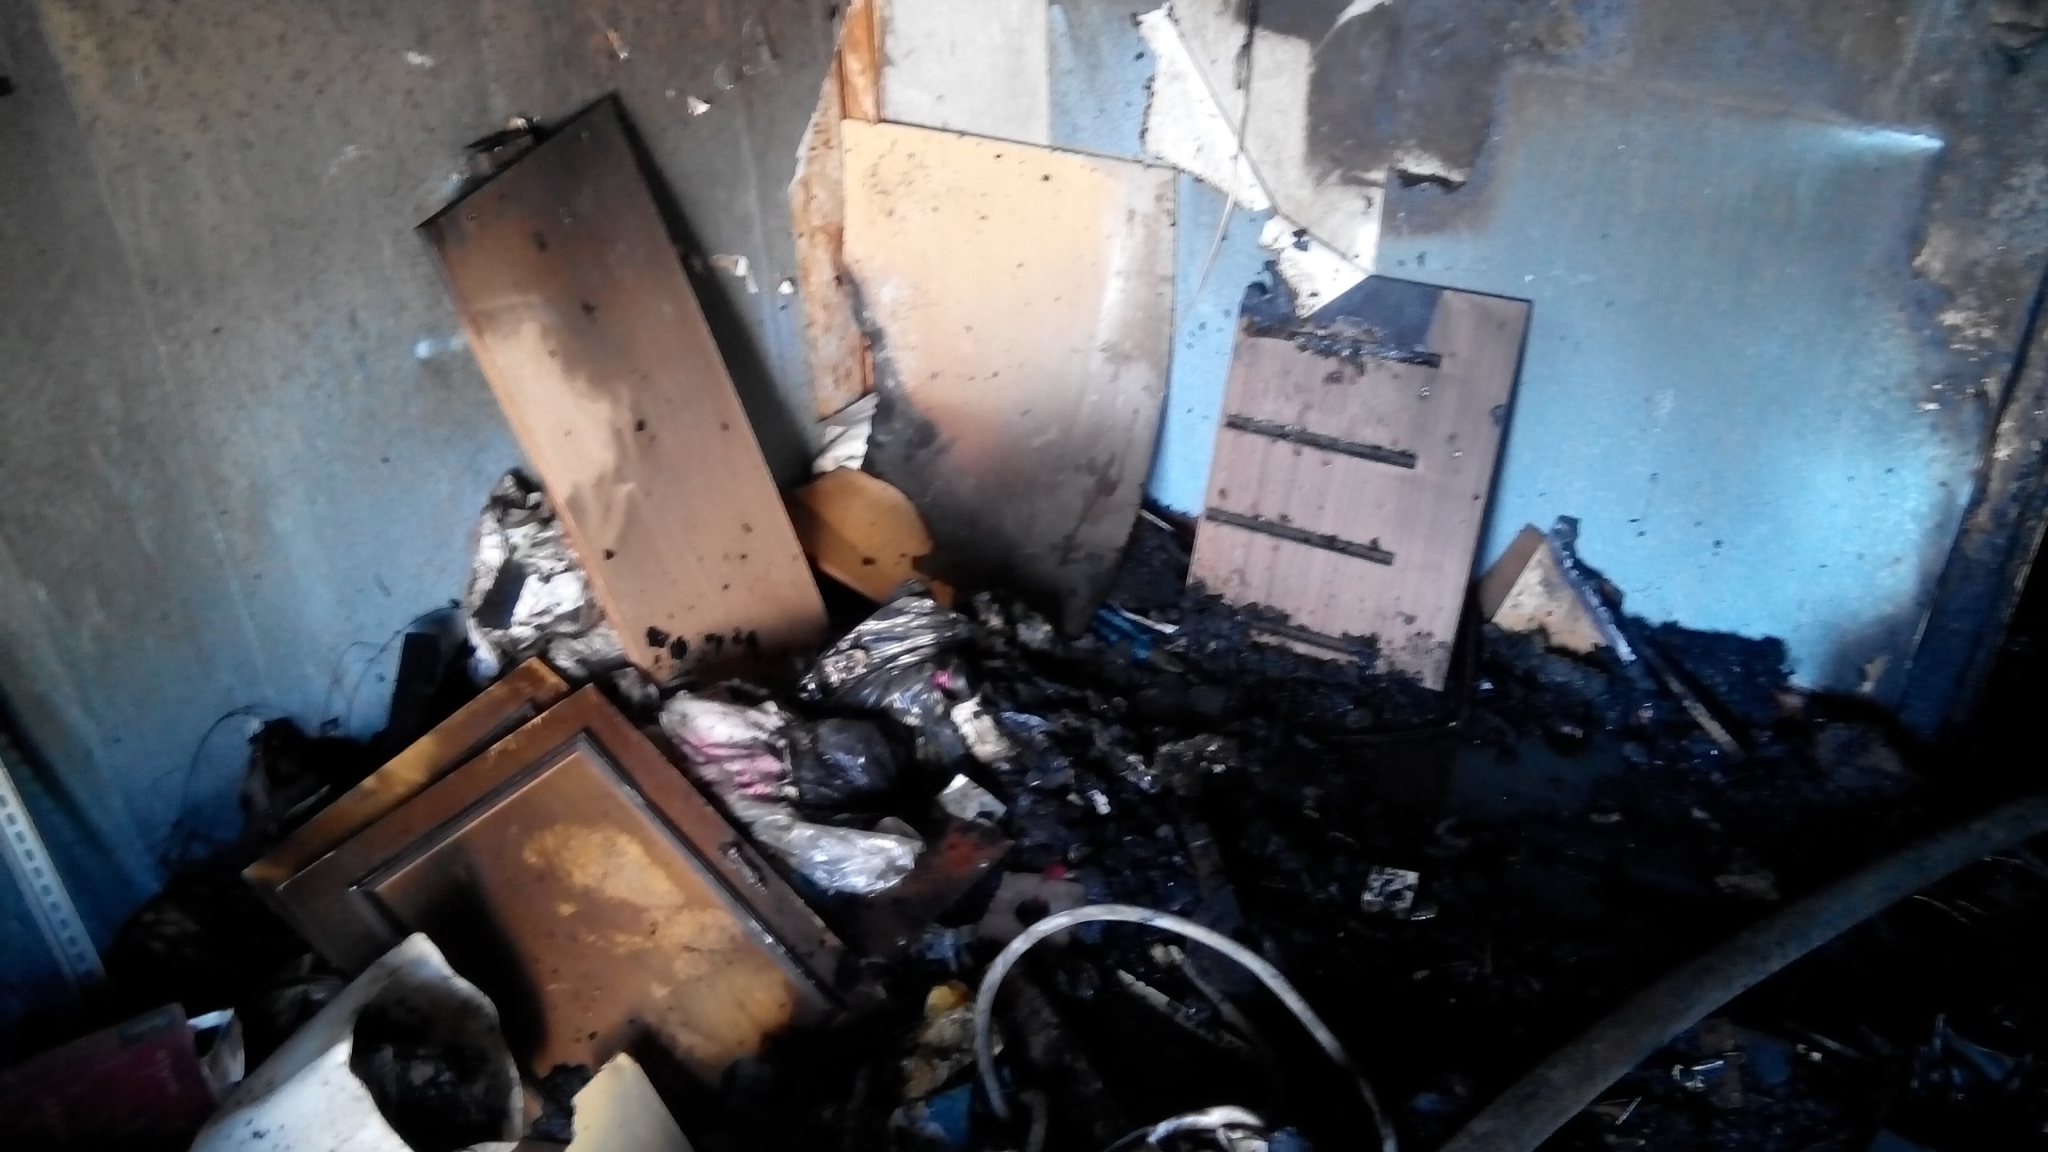 Появились фотографии с места пожара в квартире в Кузнецке